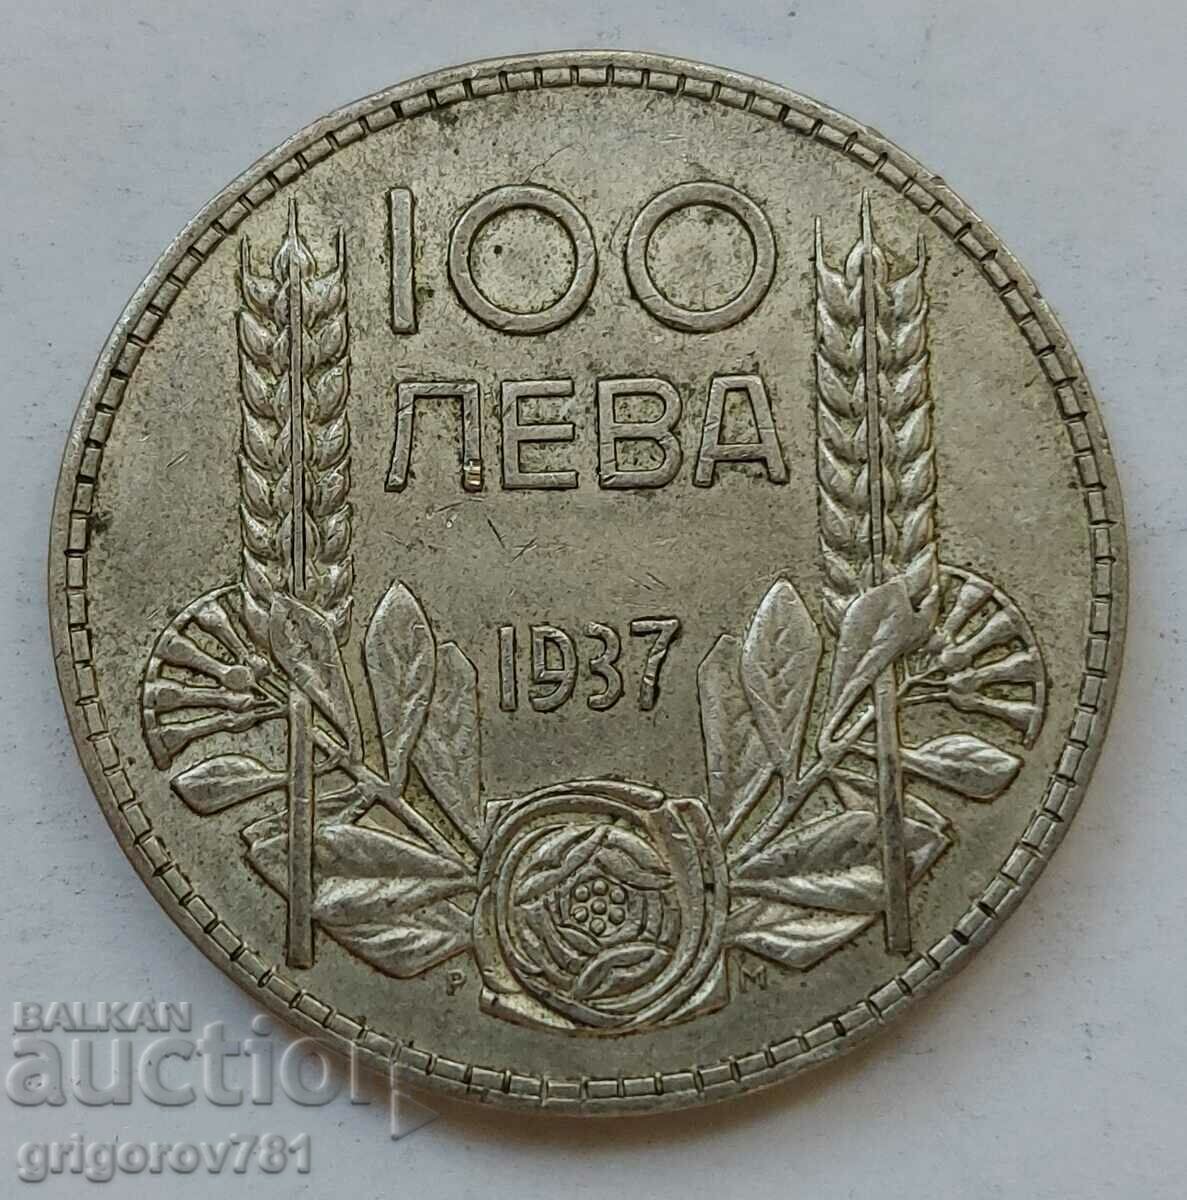 100 leva silver Bulgaria 1937 - silver coin #138